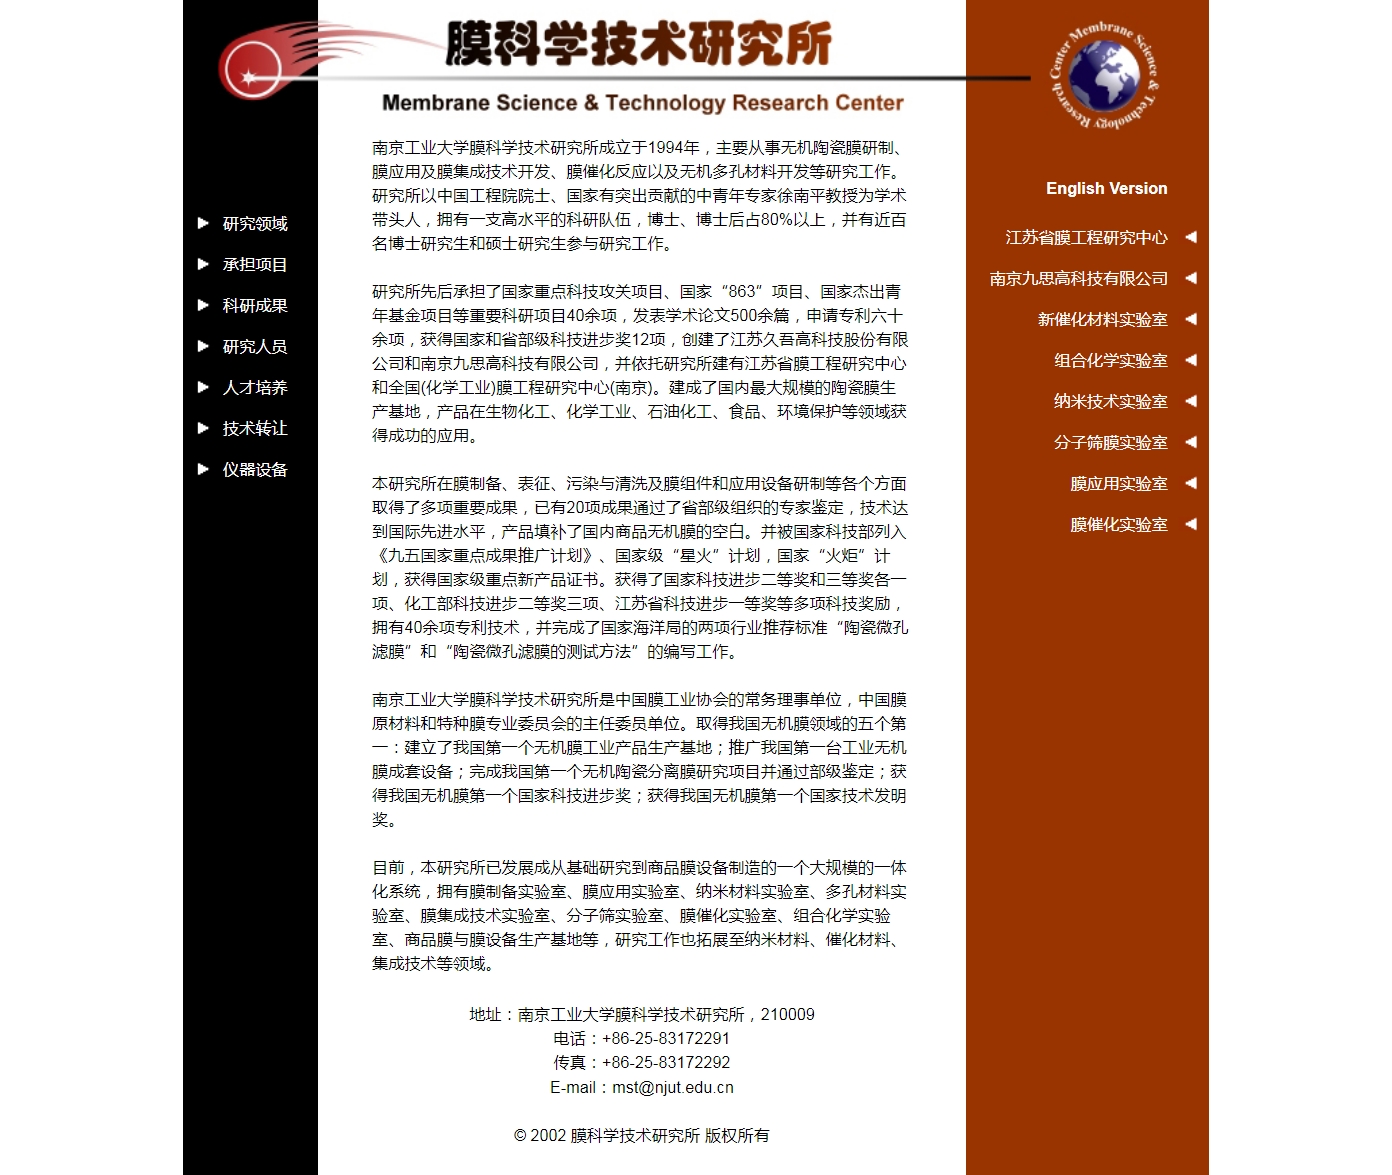 南京工业大学-膜科学技术研究所对我国膜分离技术领域的贡献